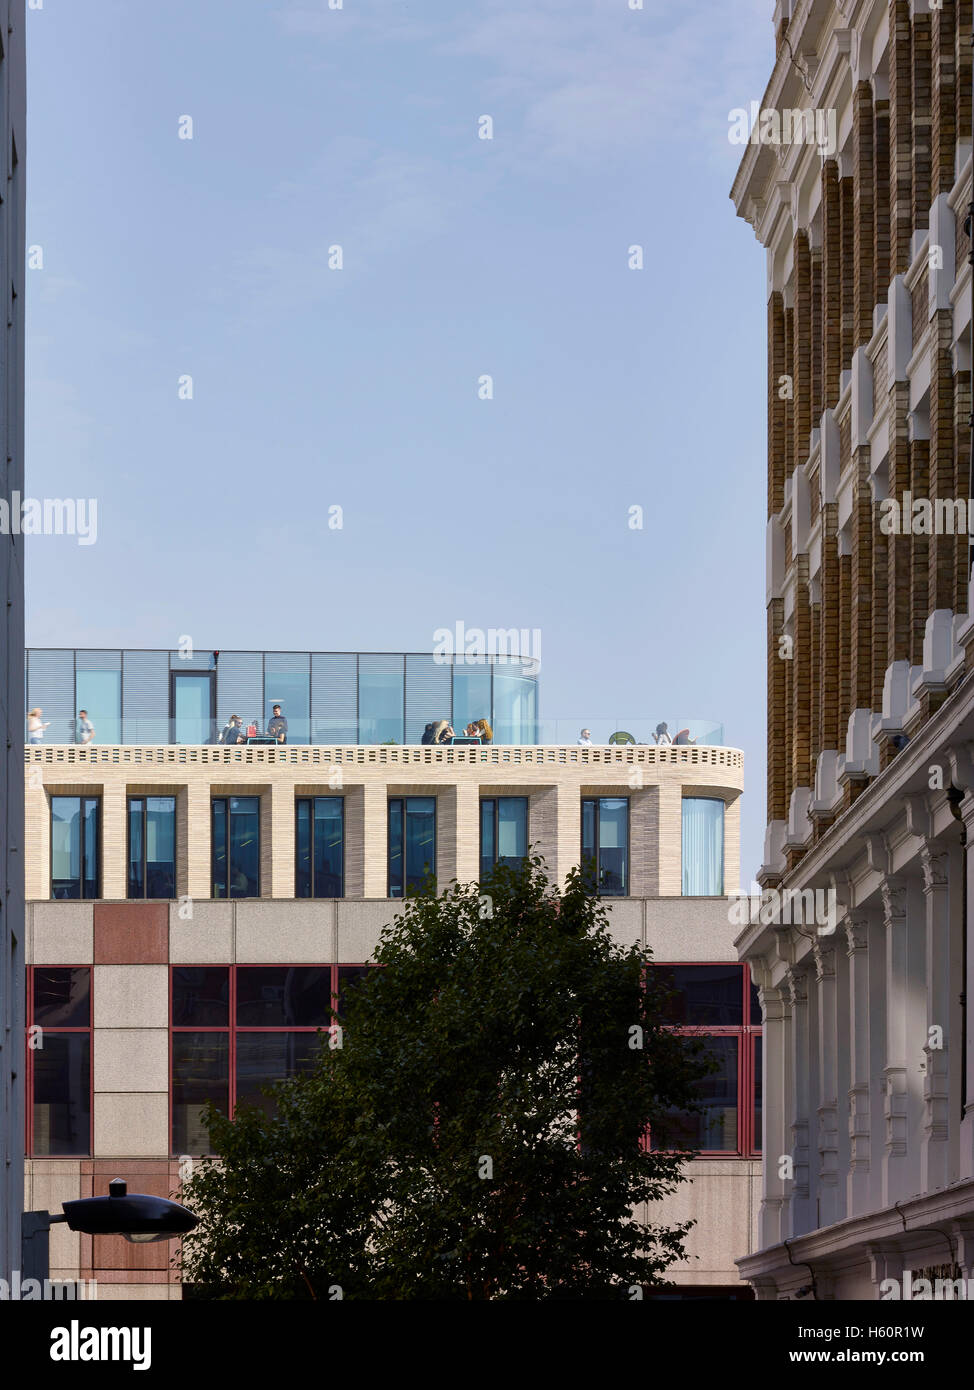 Tag Dachterrasse im Einsatz. Turnmill Gebäude, London, Vereinigtes Königreich. Architekt: Piercy & Unternehmen, 2015. Stockfoto